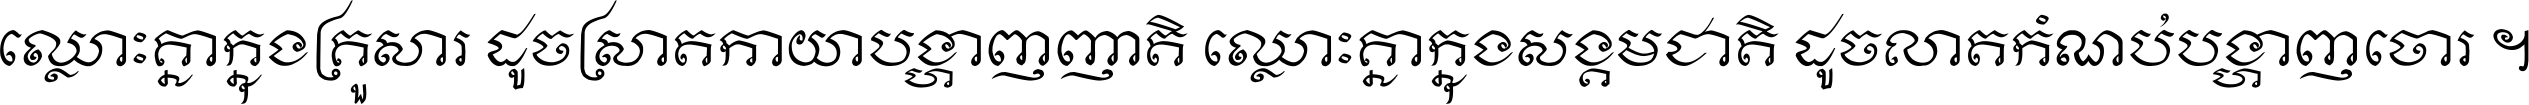 Khmer Pen-Surin